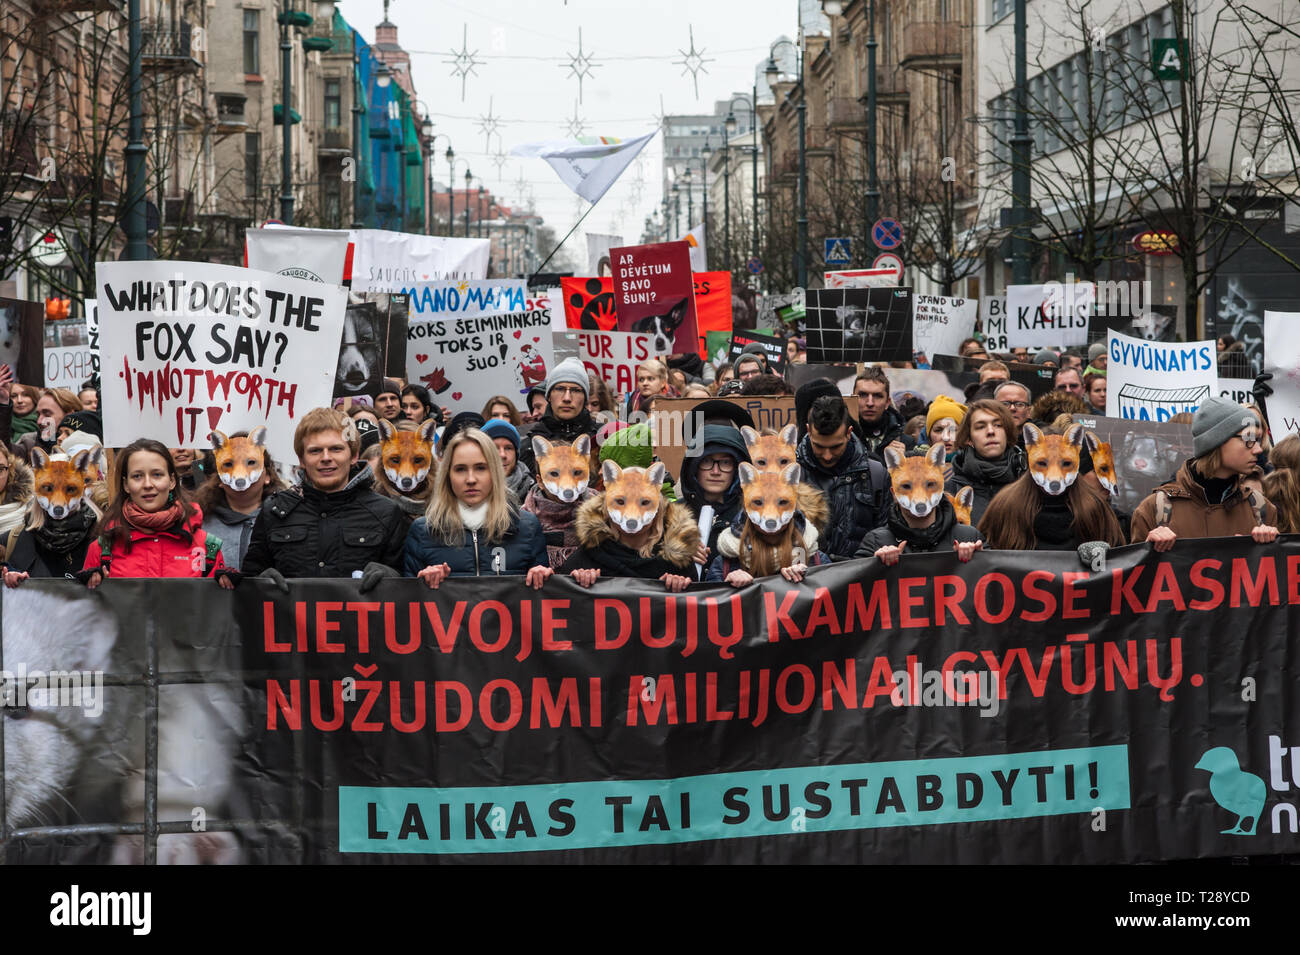 Ein Protest gegen die Pelzindustrie in Vilnius, Litauen. Litauen hat noch einige Betriebe, in denen Tiere rein gewachsen sind, ihr Fell zu ernten. Stockfoto